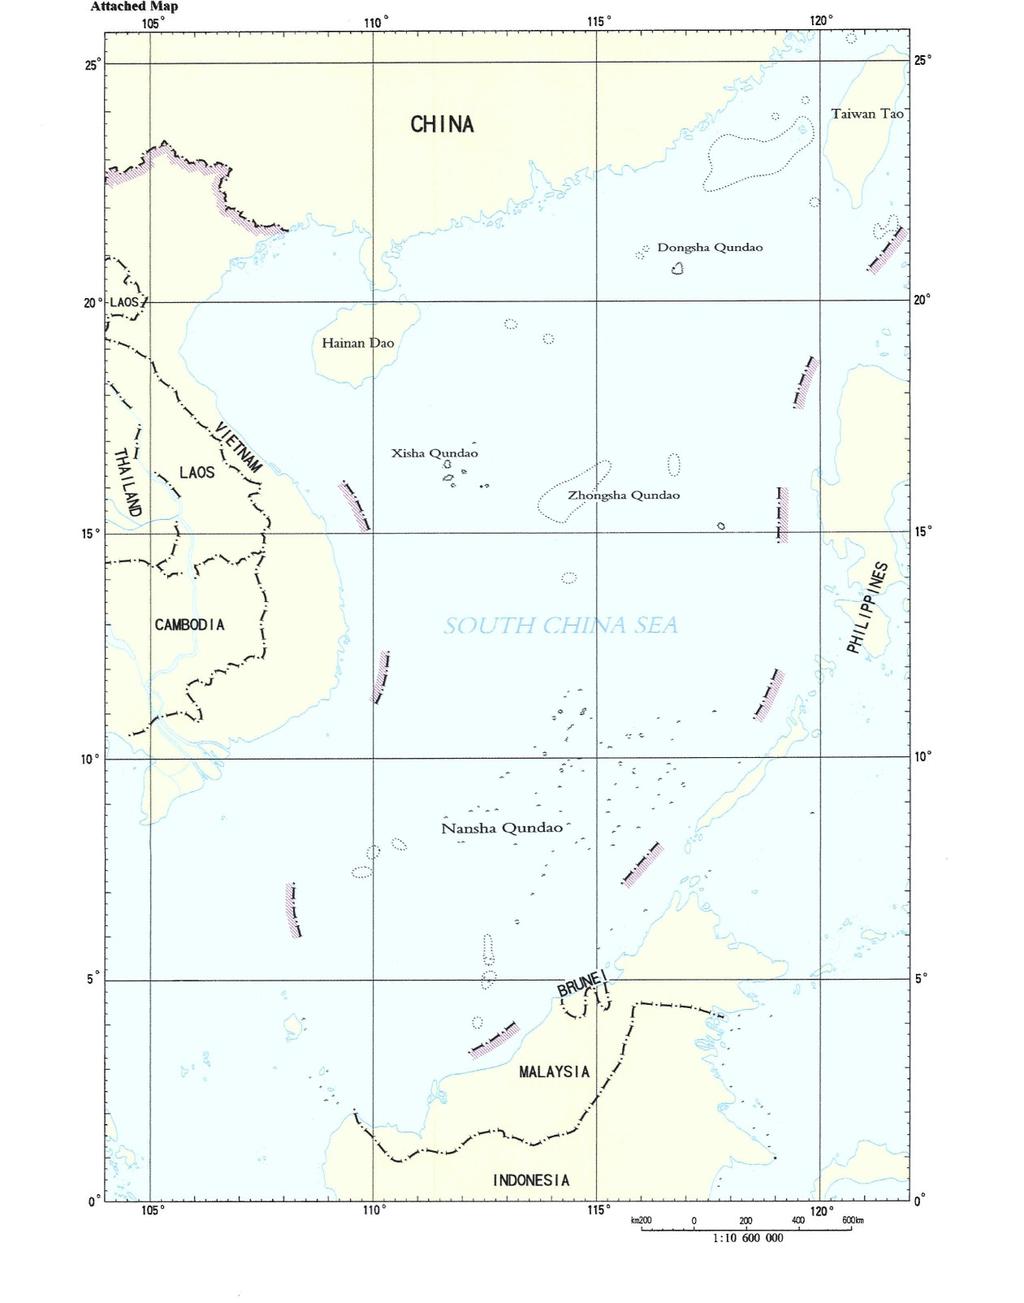 60 Zdroj: 1947 South China Sea Islands[online], Wikimedia Commons, [staženo 2017-30- 04]. Dostupné z: https://commons.wikimedia.